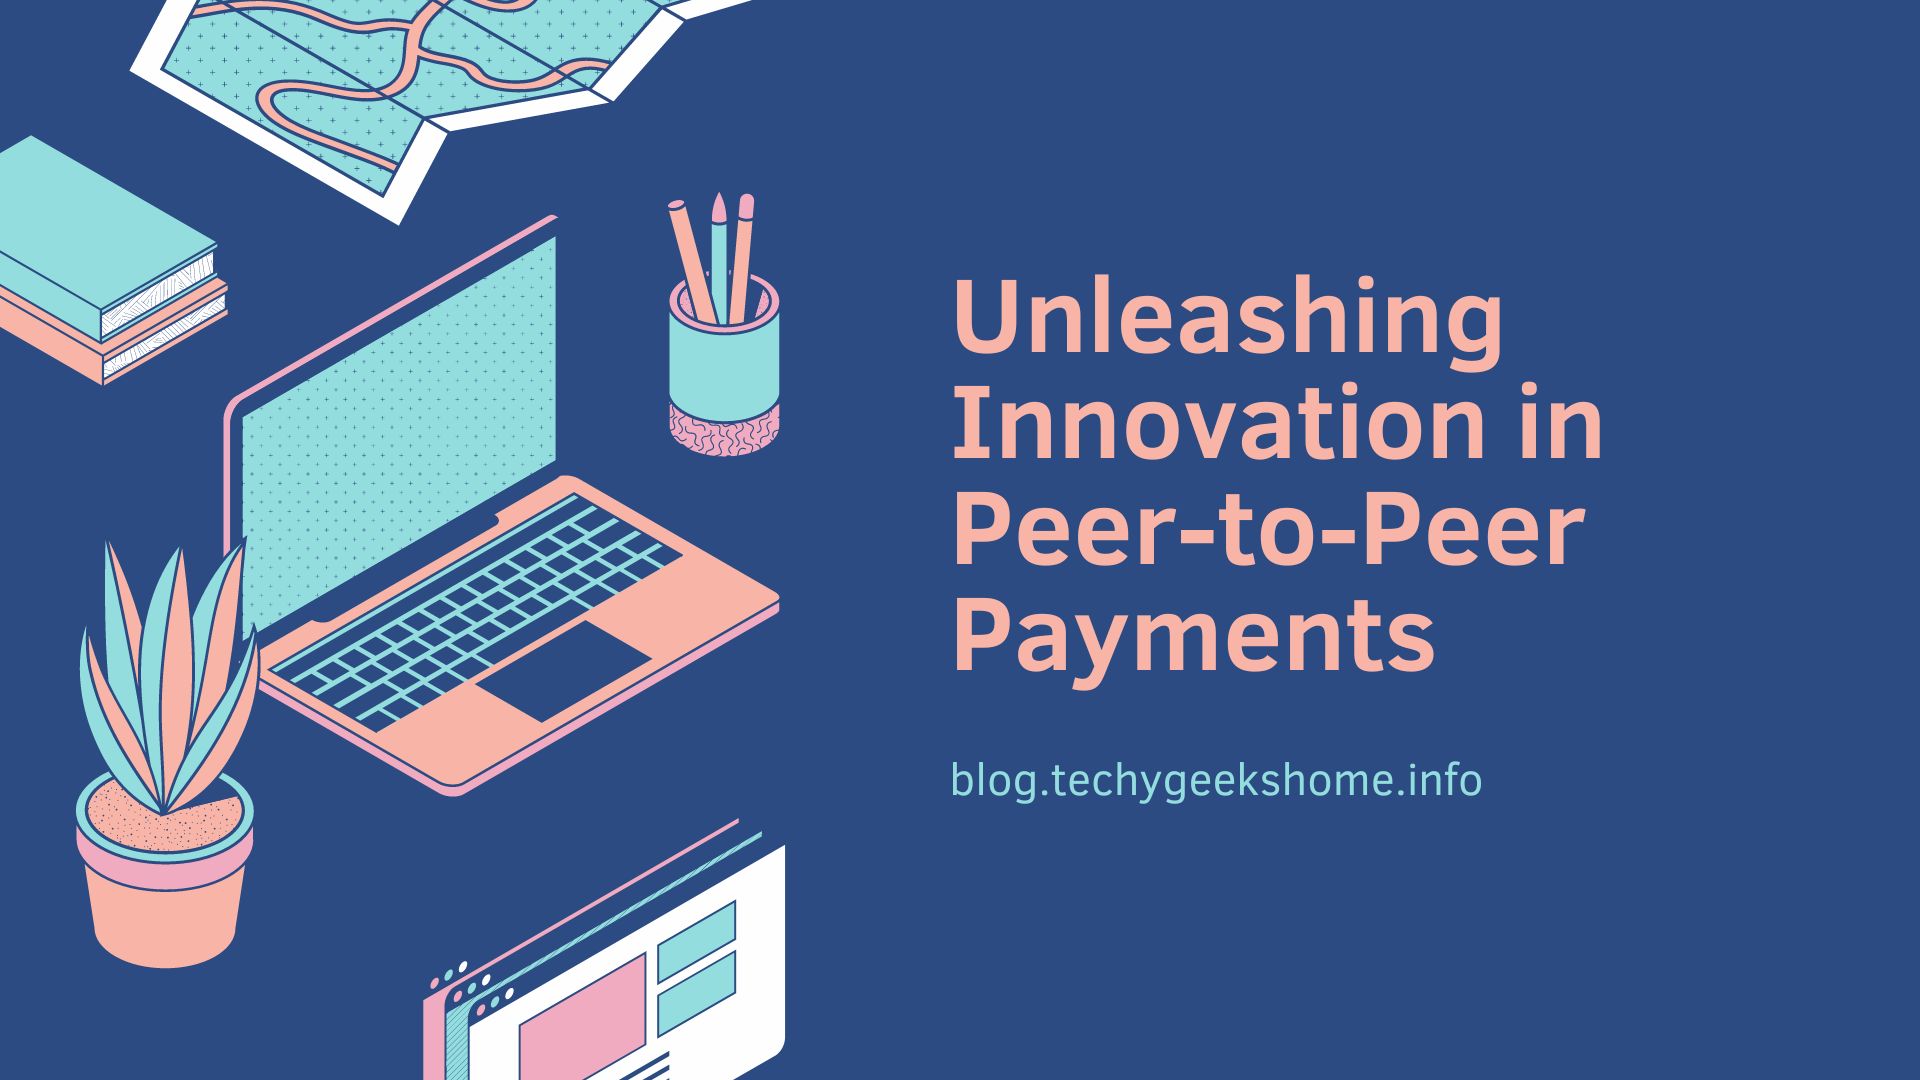 Unleashing Innovation in Peer-to-Peer Payments